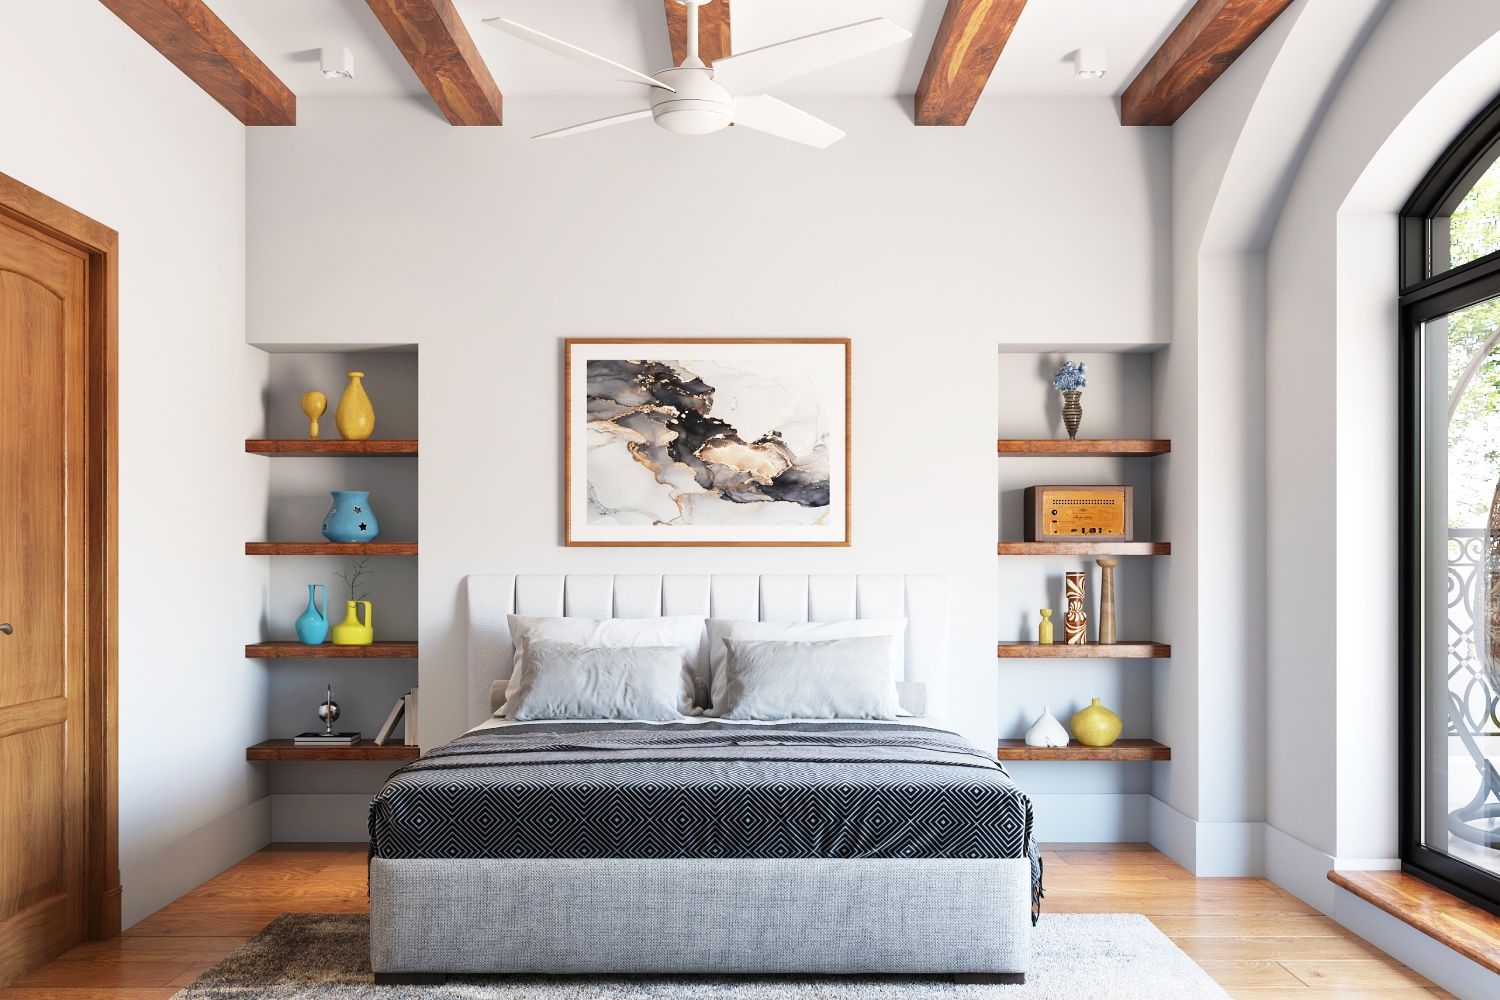 Scandinavian Bedroom Ceiling Design With Wooden Beams